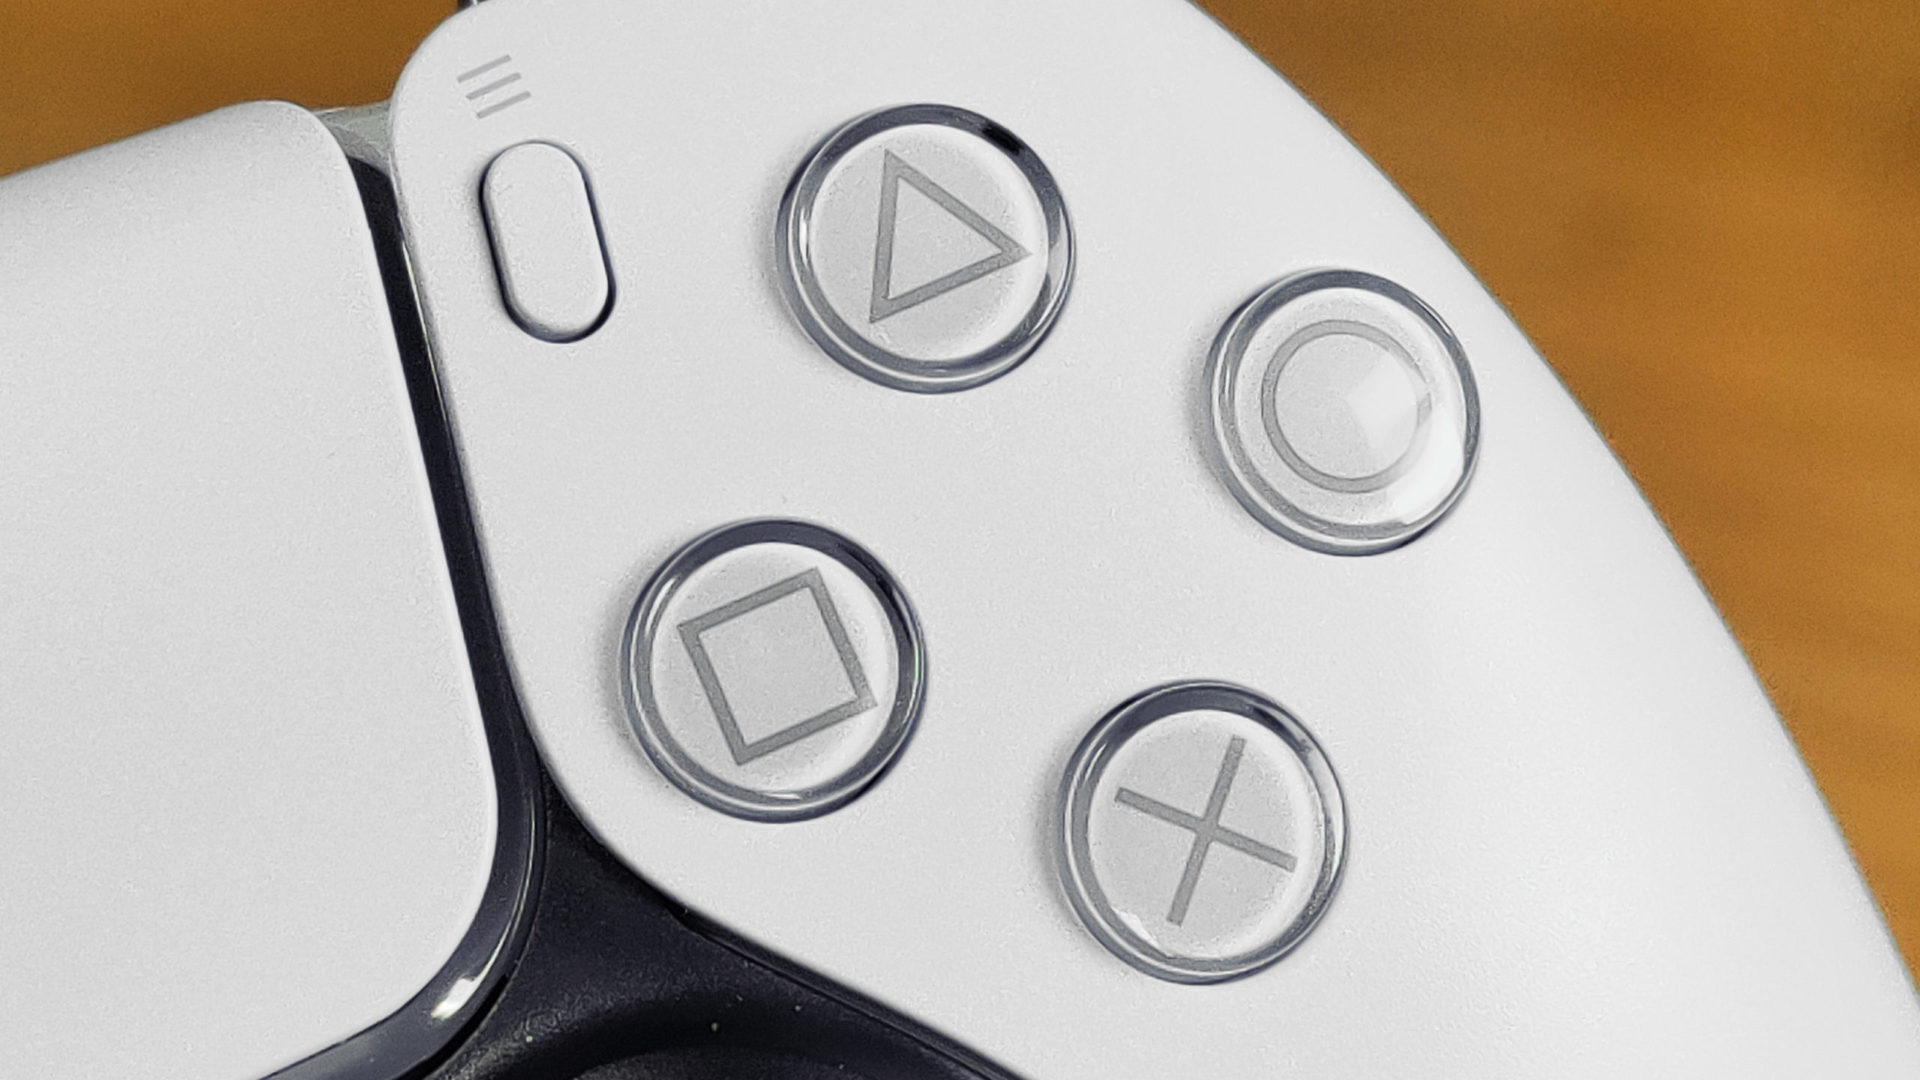 PlayStation 5 DualSense Controller Closeup of Buttons